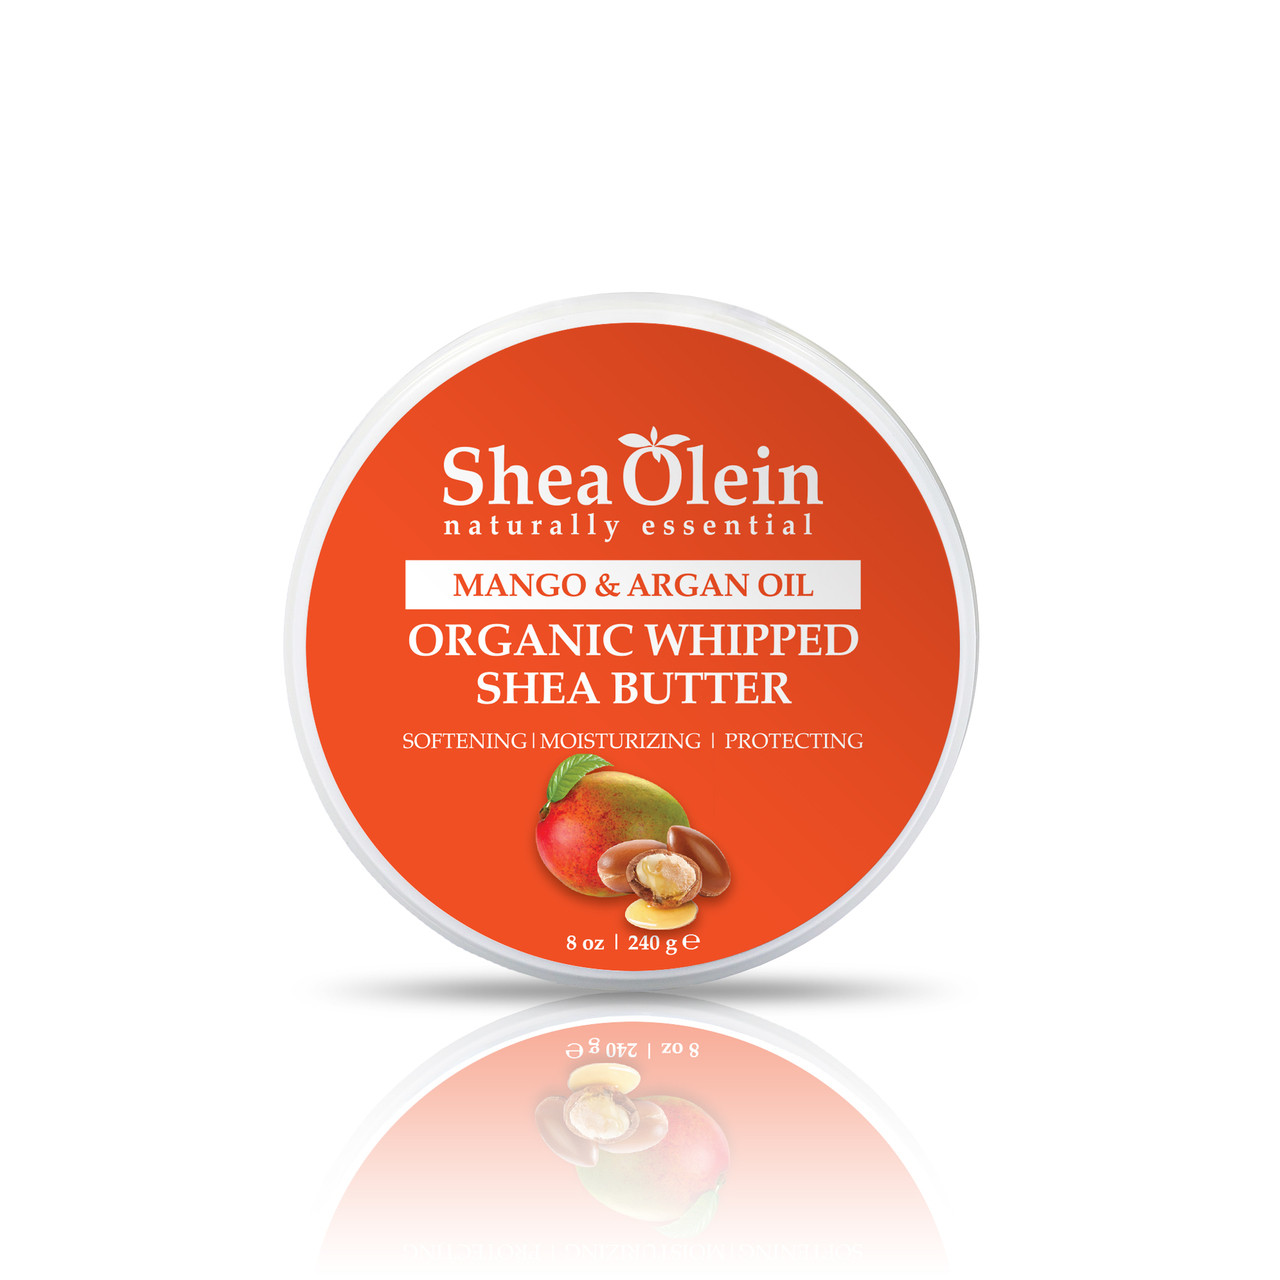 Mango & Argan Oil Organic Whipped Shea Butter (8 oz)